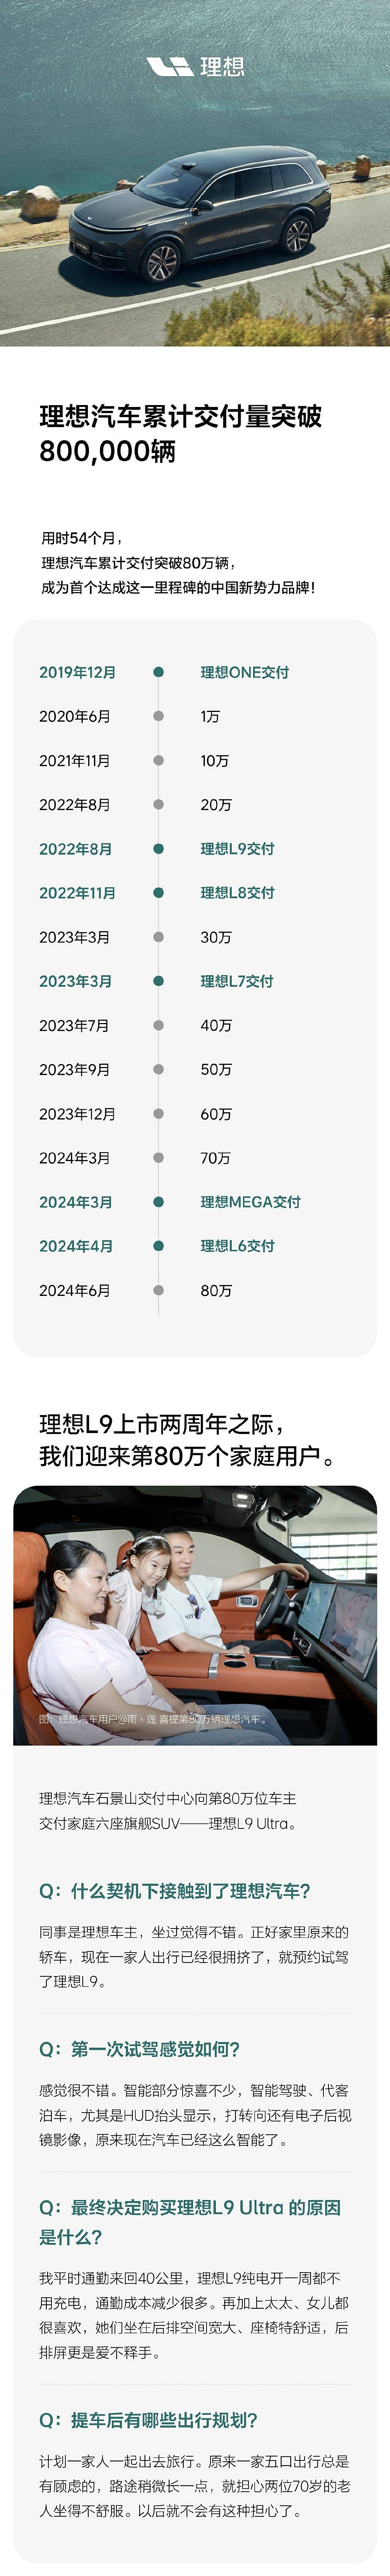 李用了54个月交付了80多万辆_搜狐汽车_ Sohu.com。